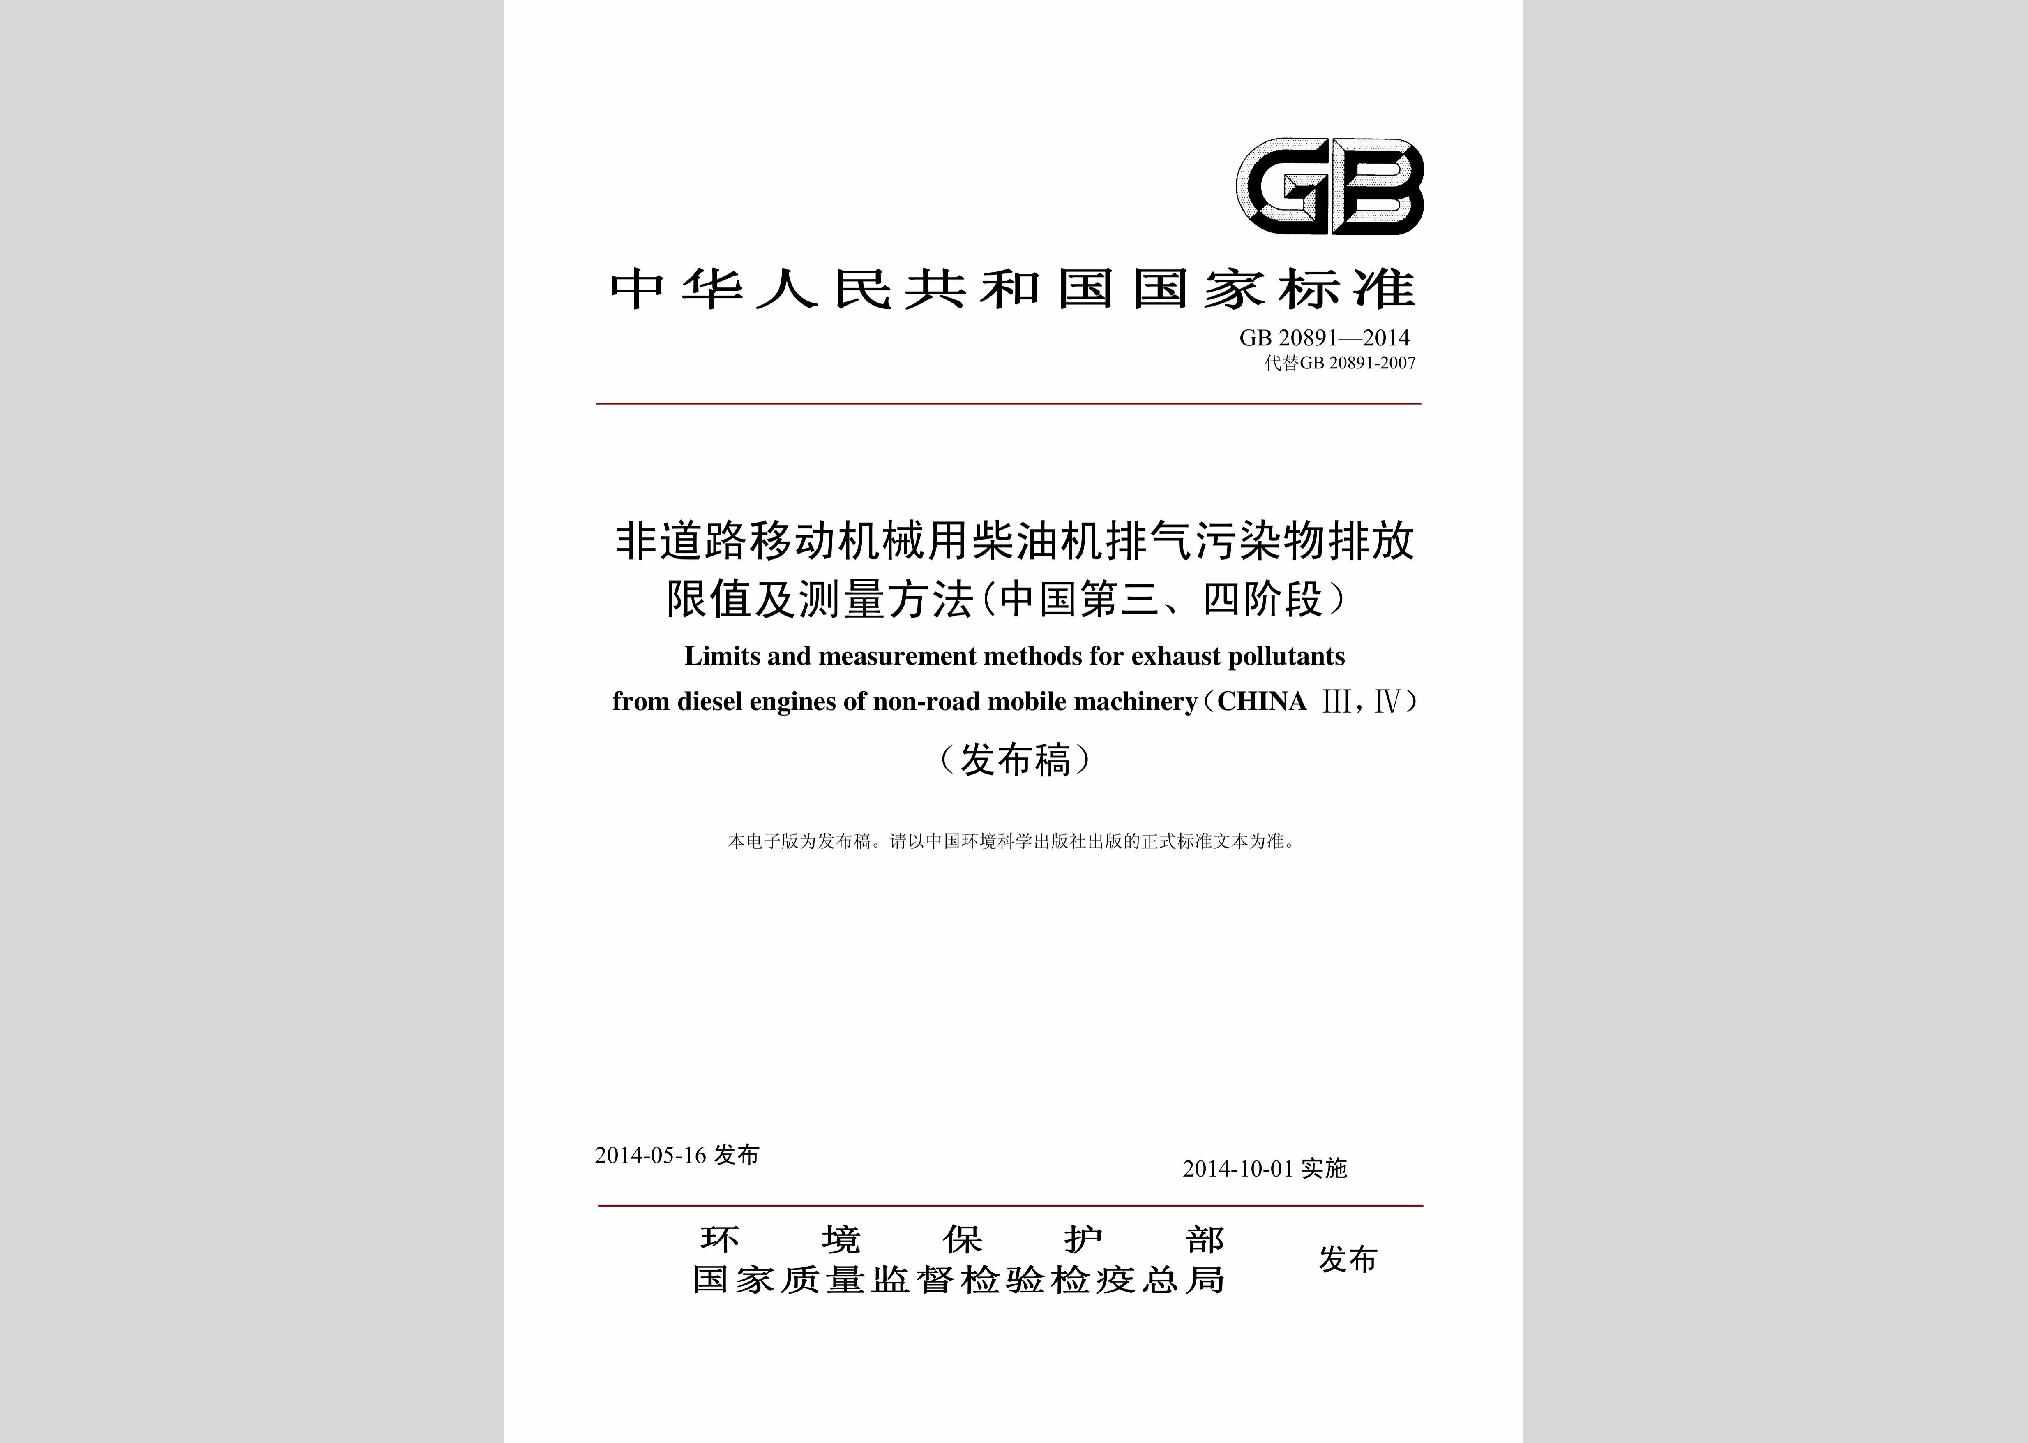 GB20891-2014：非道路移动机械用柴油机排气污染物排放限值及测量方法(中国第三、四阶段)